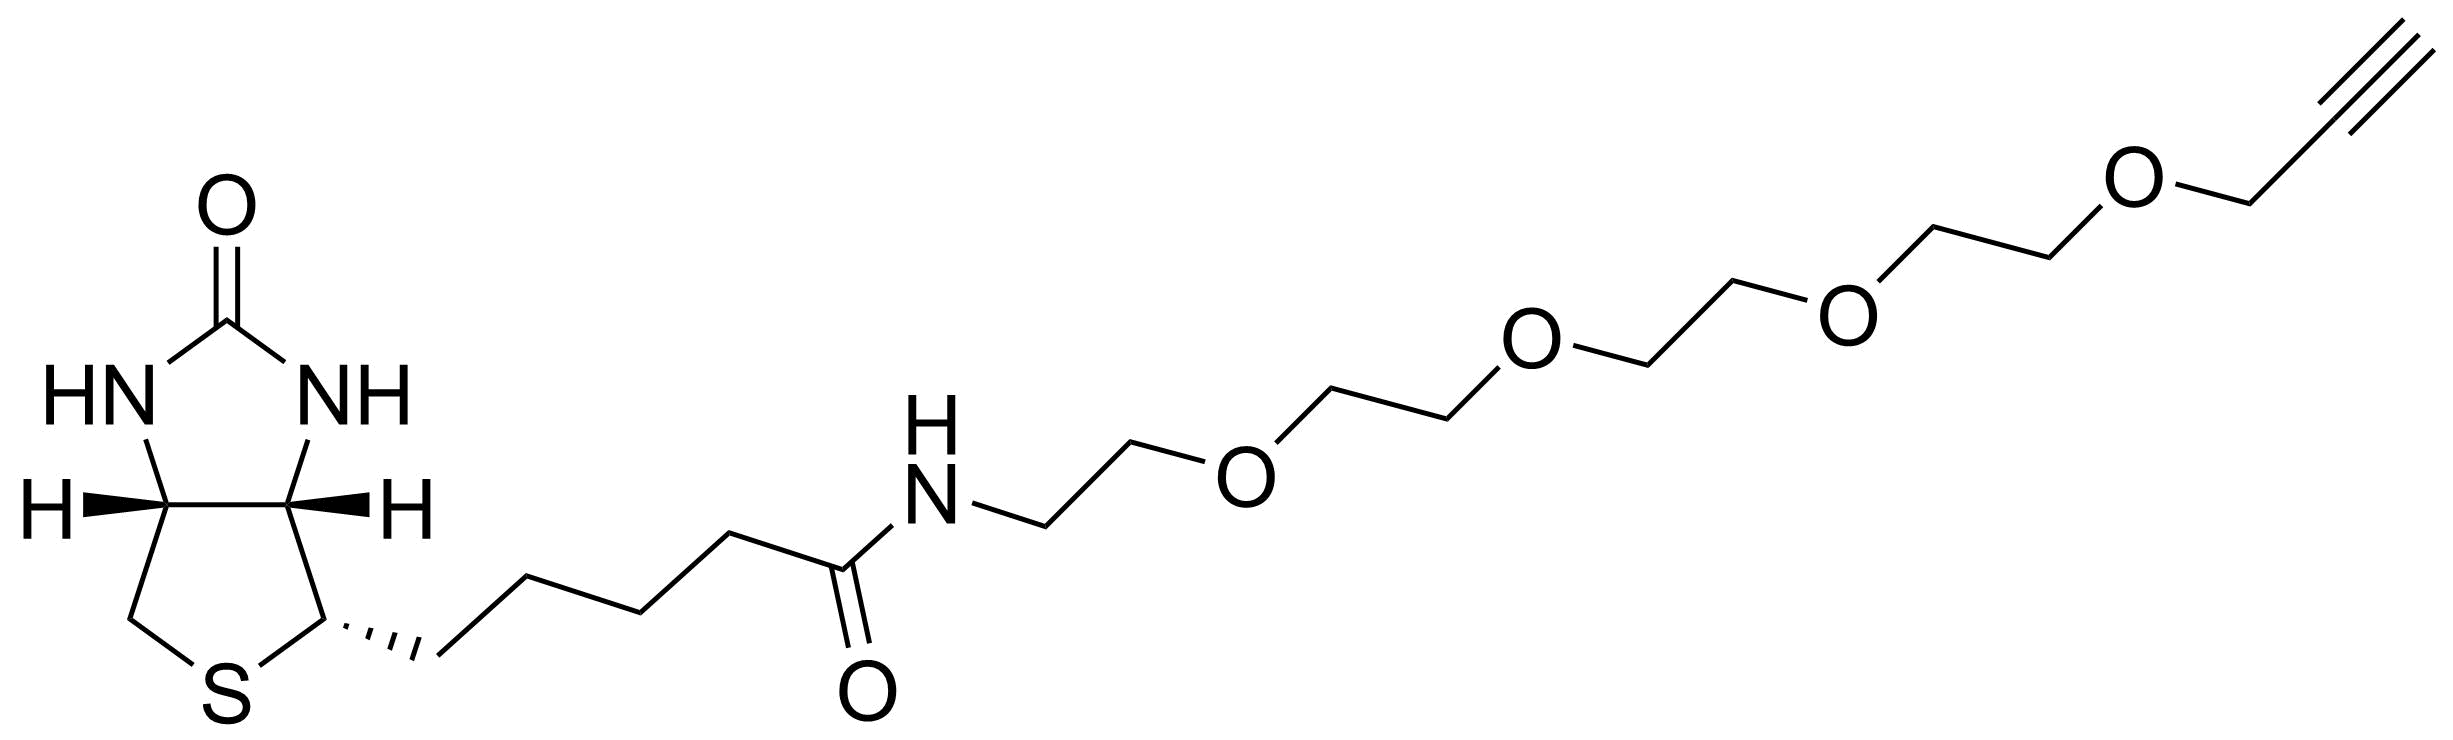 BiotinAlk